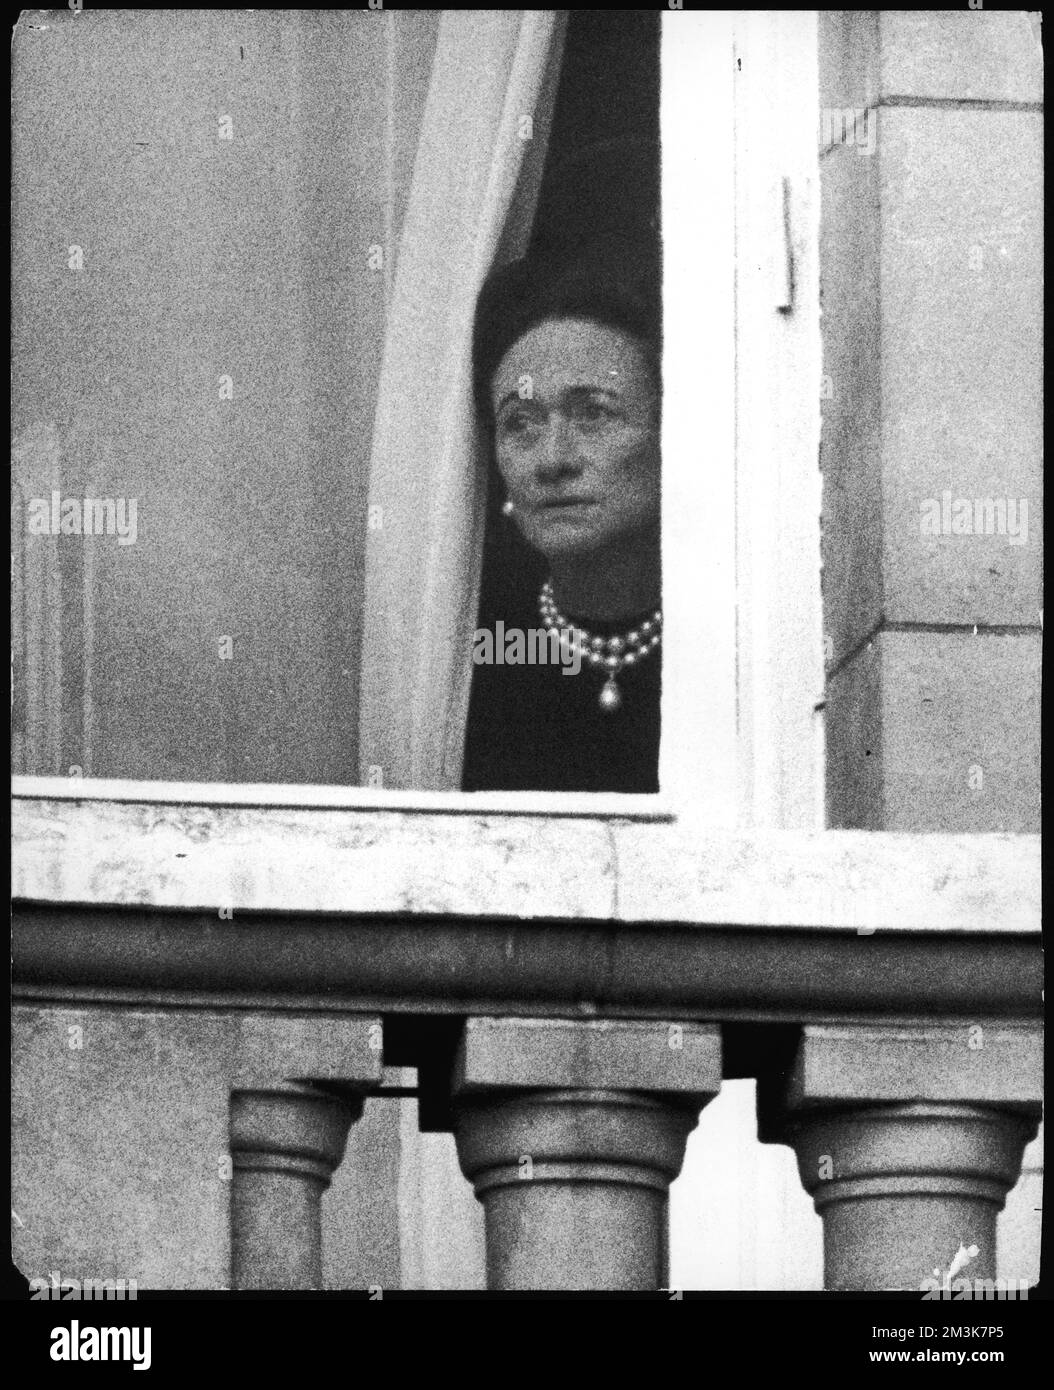 Wallis Simpson am Fenster des Buckingham Palace, der am 3.. Juni 1972 die Farbenpracht beobachtet. Wallis war nach England gereist und wurde von der Königin empfangen, als ihr Ehemann, der Herzog von Windsor, früher König Edward VIII., starb Datum: 1896 - 1986 Stockfoto